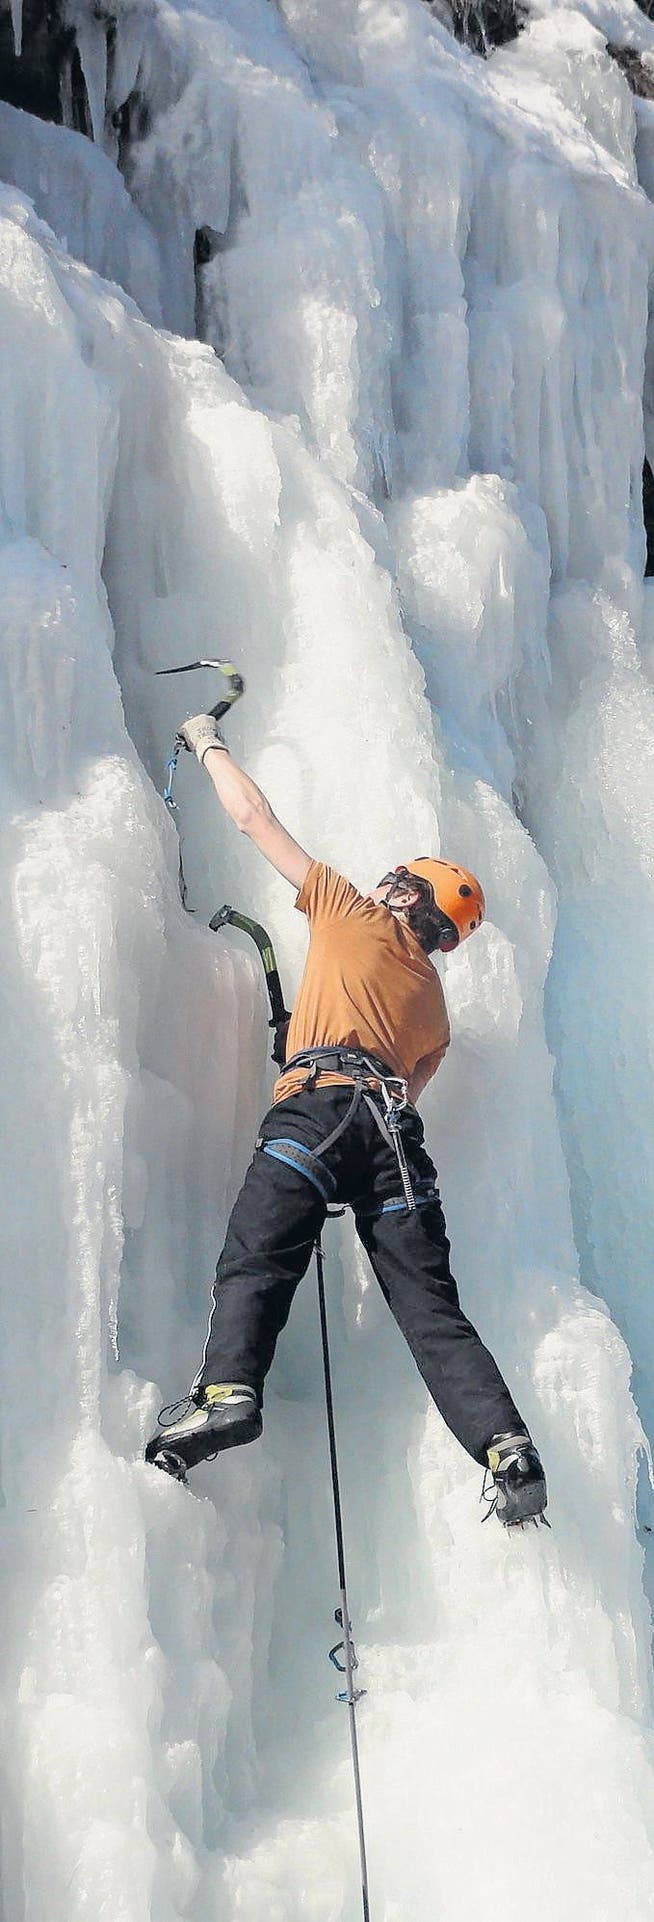 Der Steckborner Sebastian Schweizer mitten im Eis. (Bild: Andreas Schweizer)